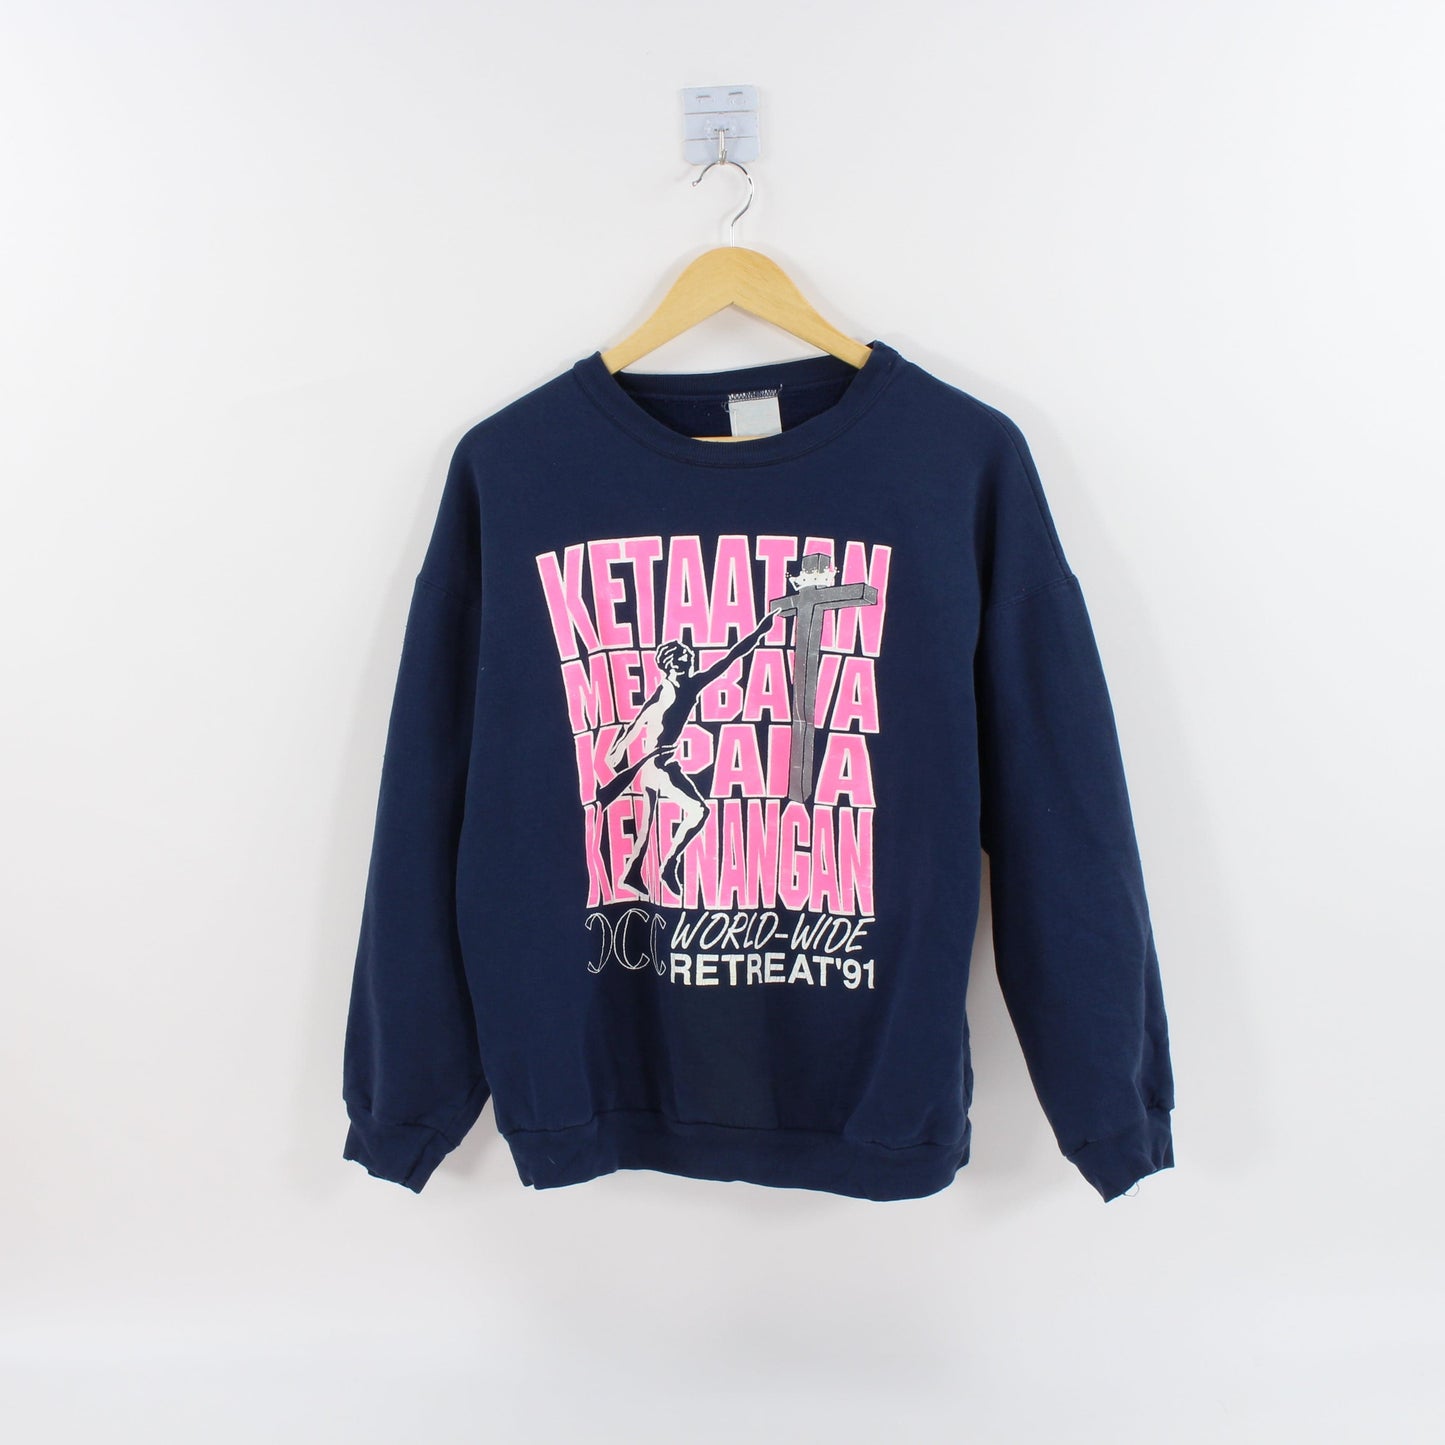 Other Vintage 1991 World Wide Retreat Sweatshirt Size Medium